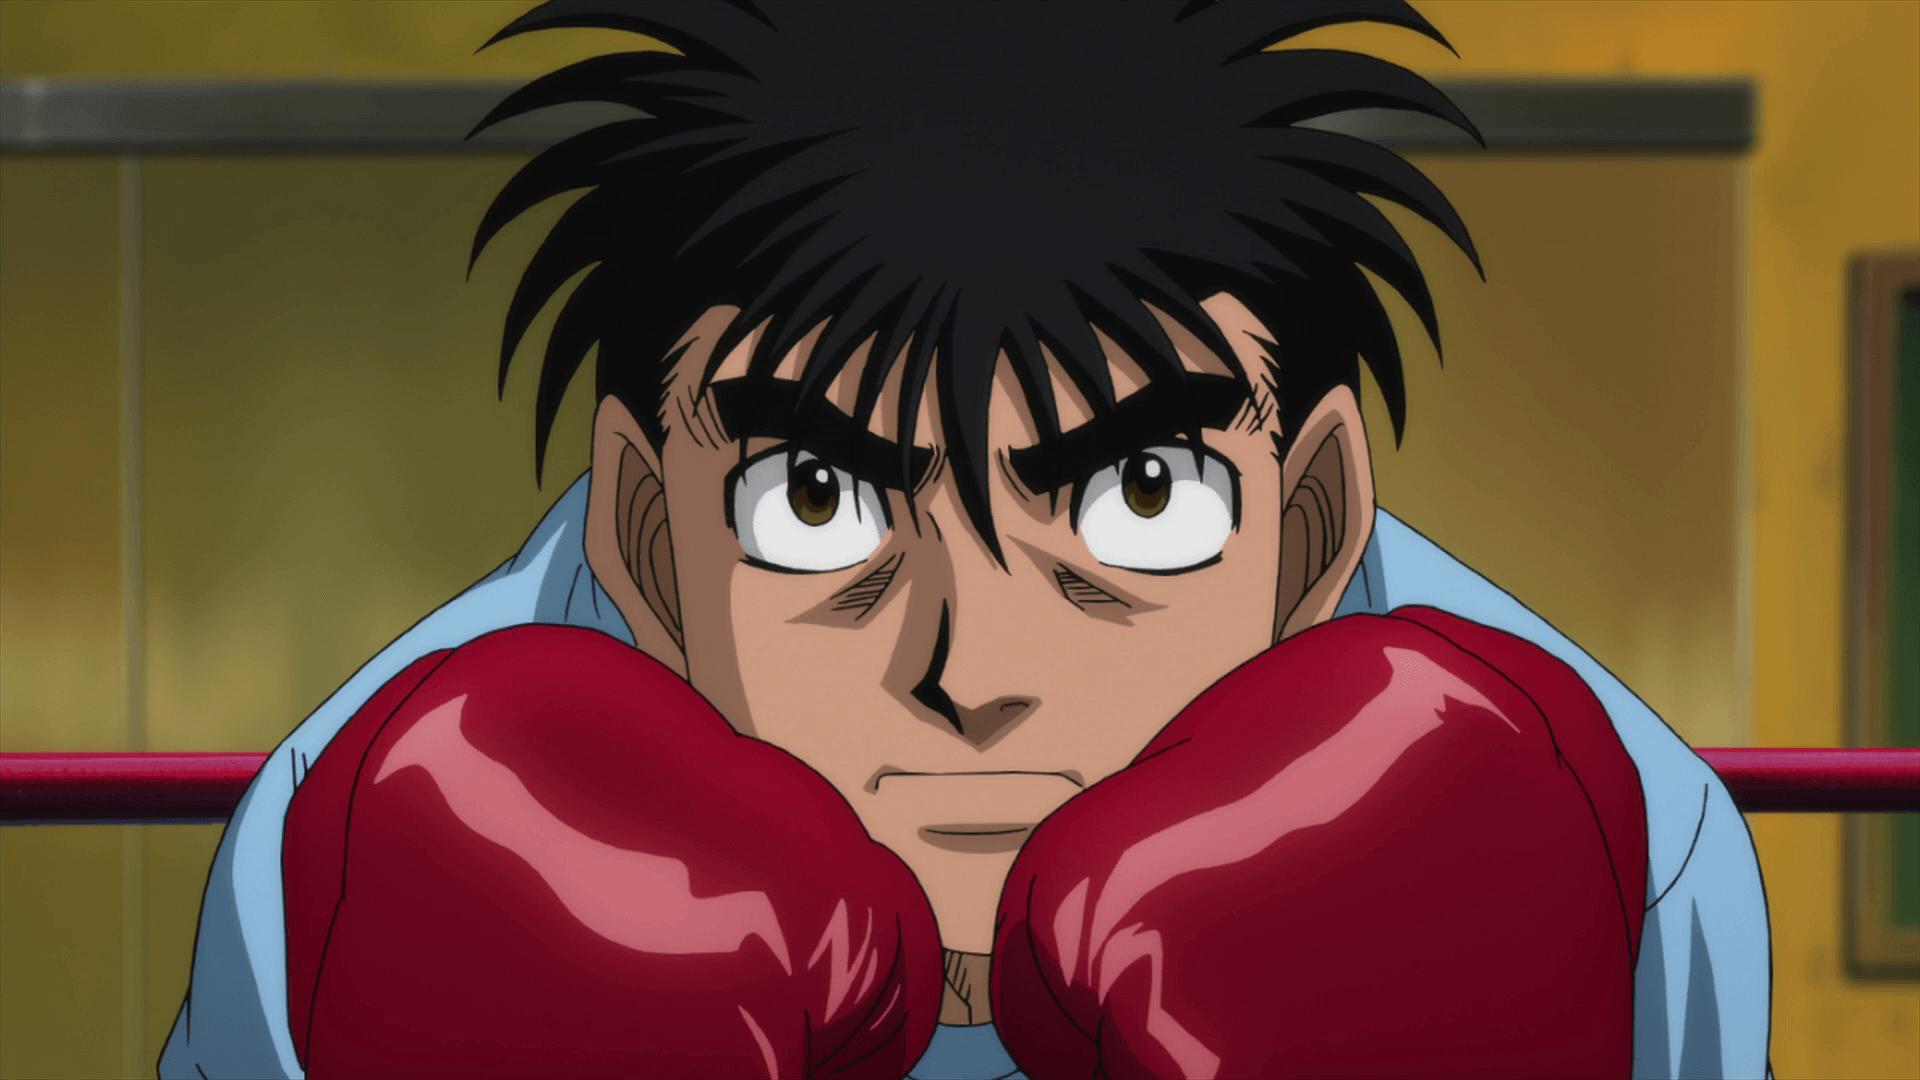 Hajime no Ippo es un manga sobre boxeo creado por el autor Jyoji Morikawa.